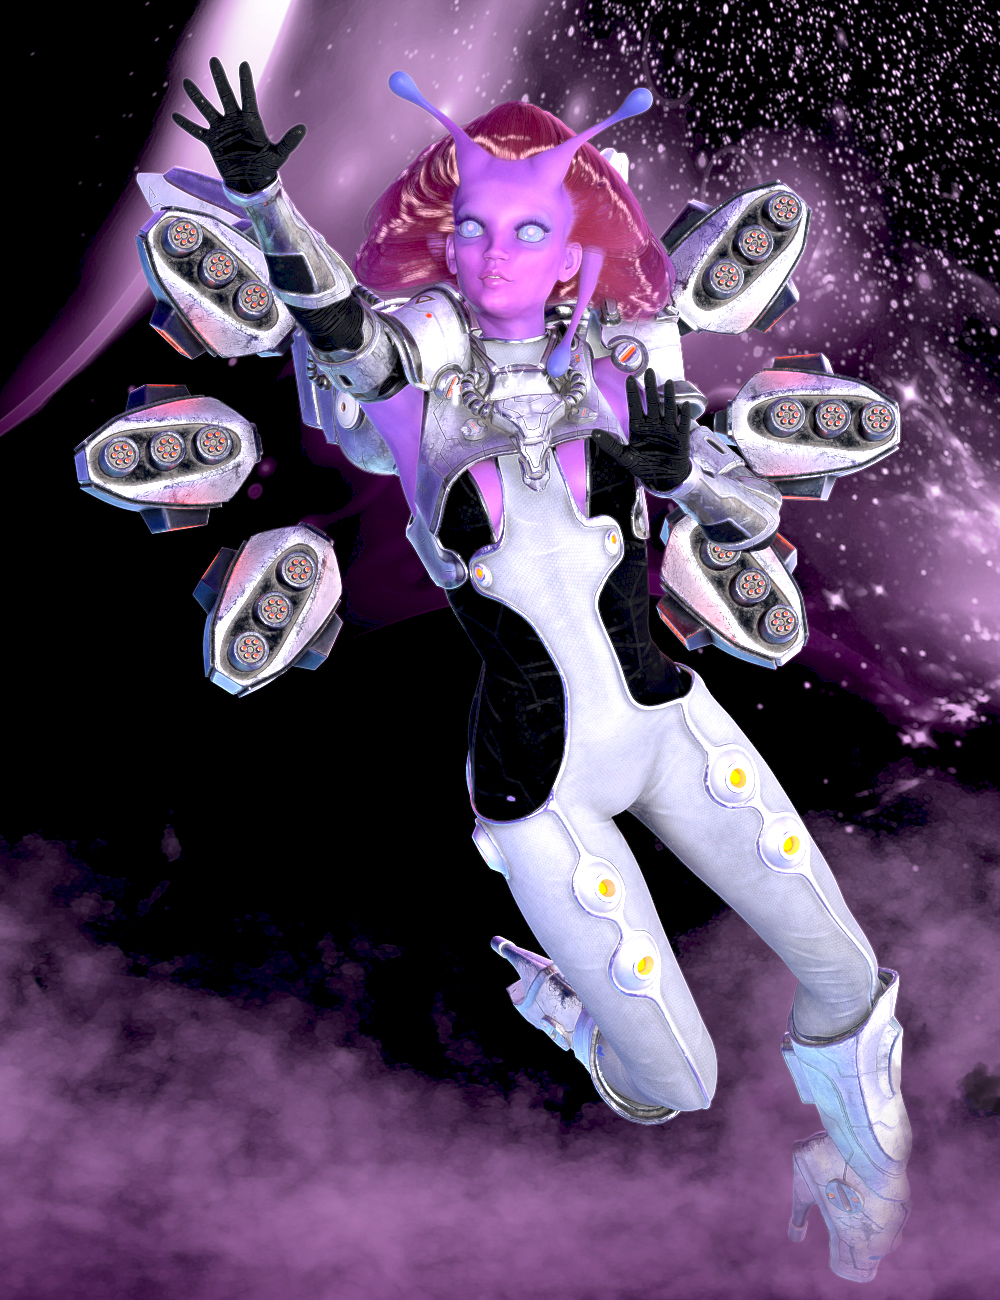 dForce Galactic Empress Hair Styles  for Genesis 8 Female(s) by: 3DivaLlynara, 3D Models by Daz 3D